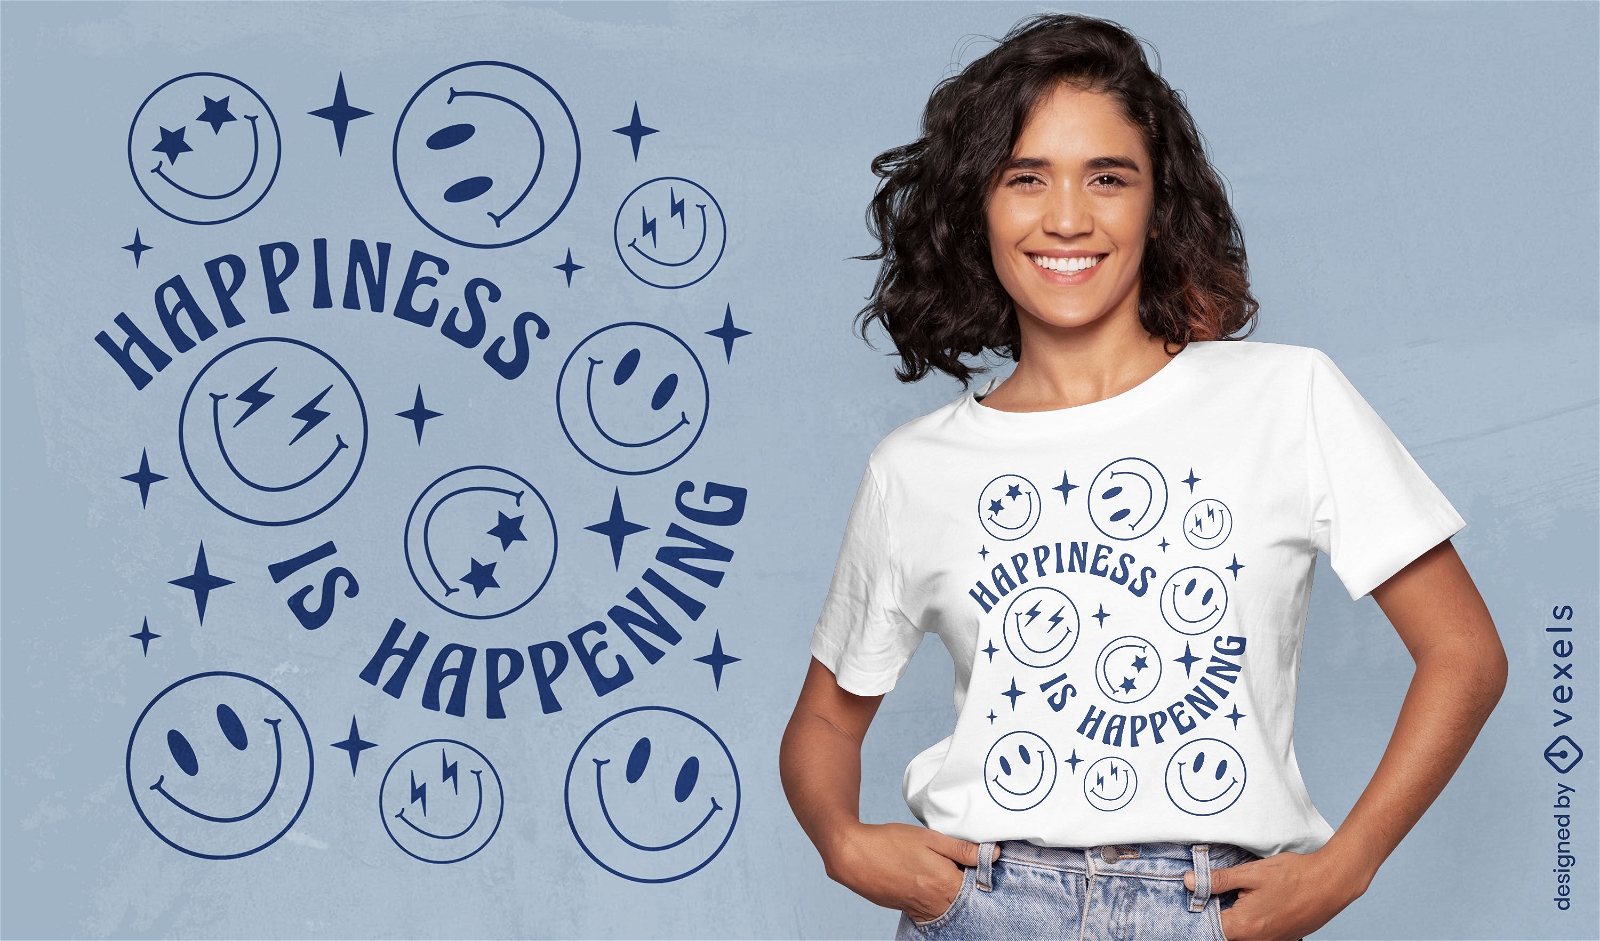 Diseño de camiseta de felicidad de caras sonrientes.